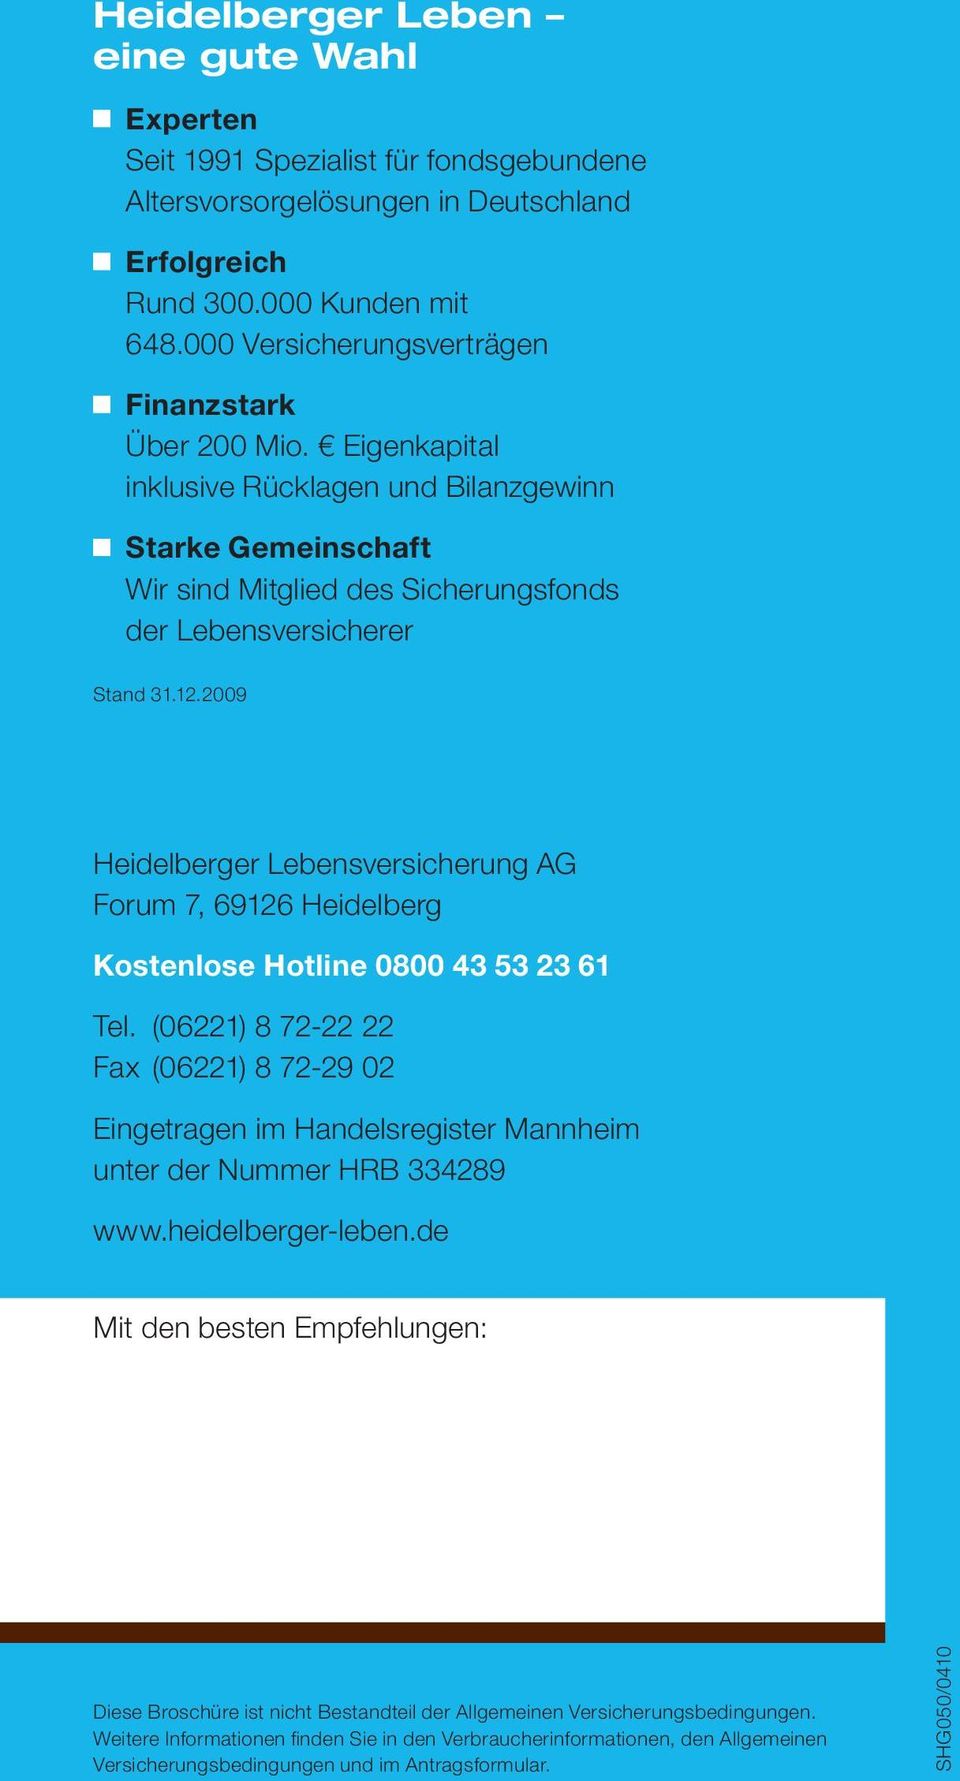 2009 Heidelberger Lebensversicherung AG Forum 7, 69126 Heidelberg Kostenlose Hotline 0800 43 53 23 61 Tel.